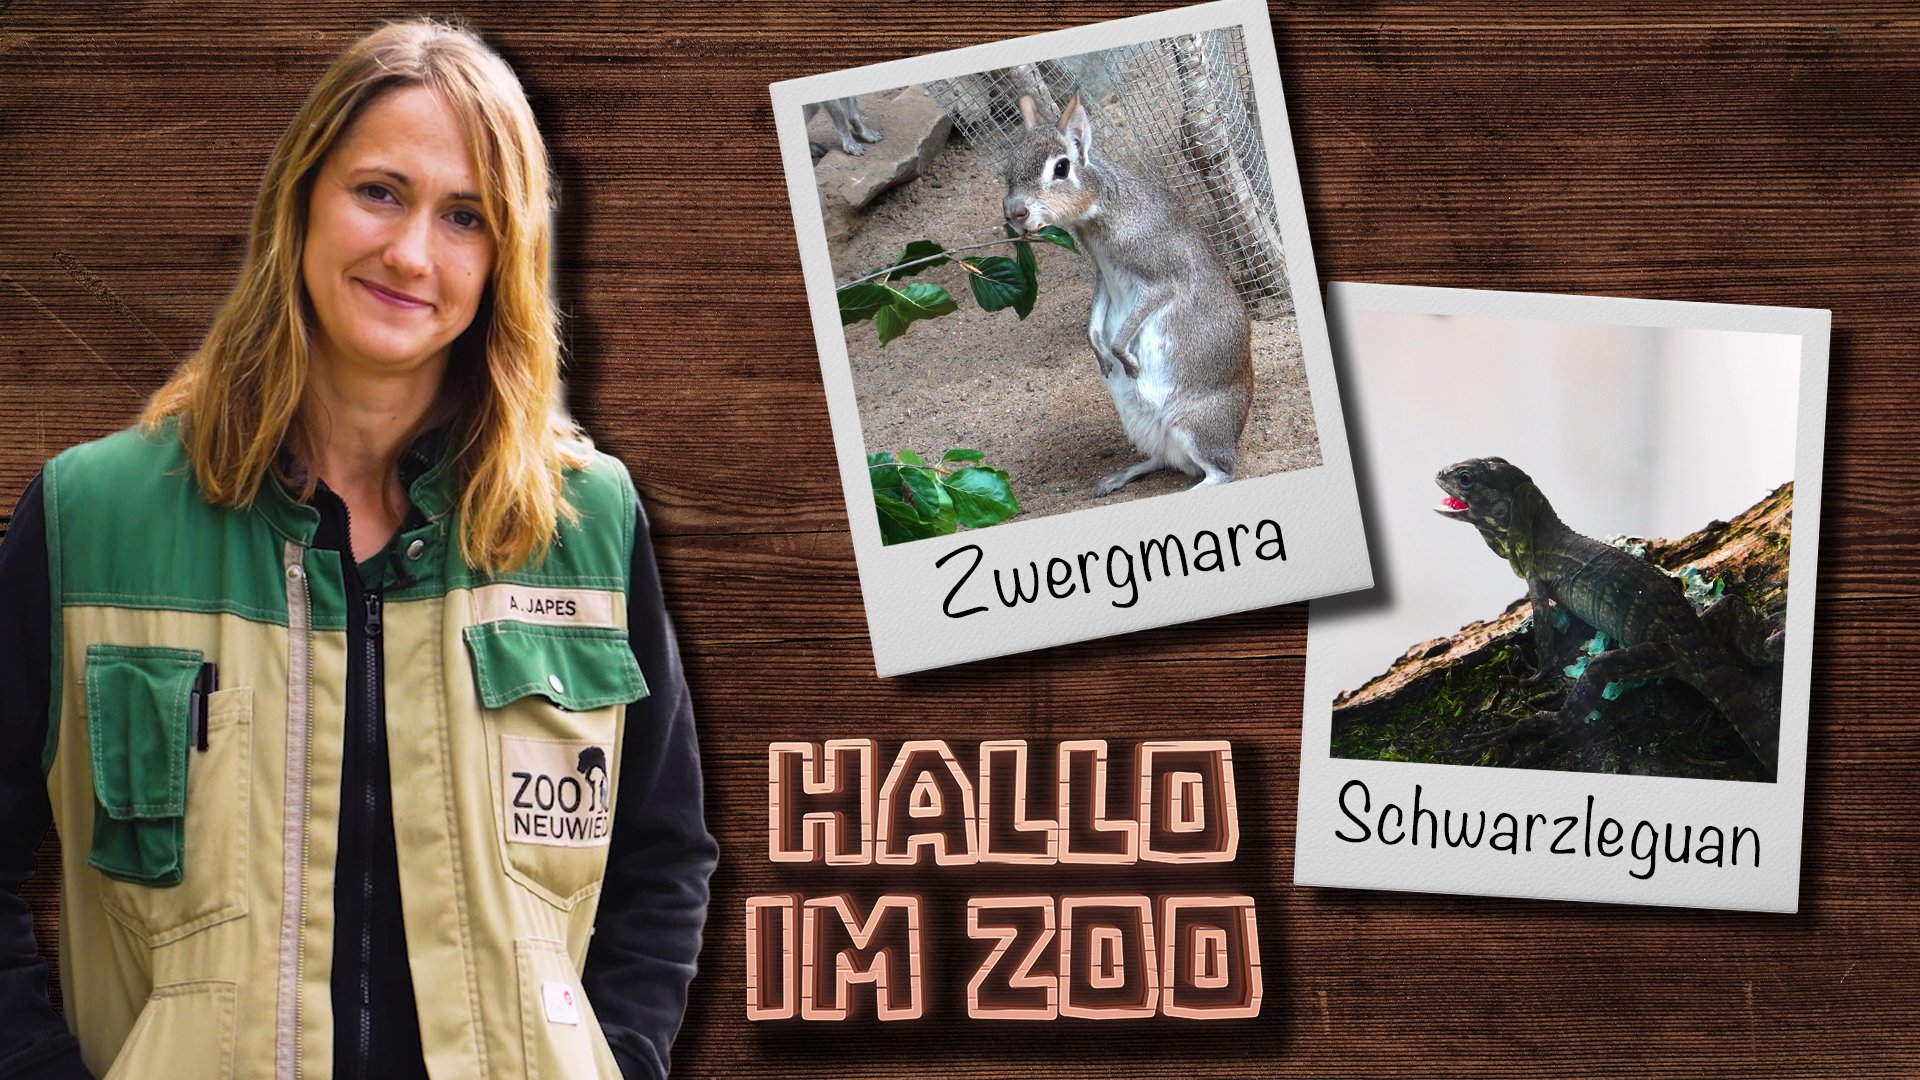 Hallo im Zoo, die neue Tier-Serie aus dem Zoo Neuwied!